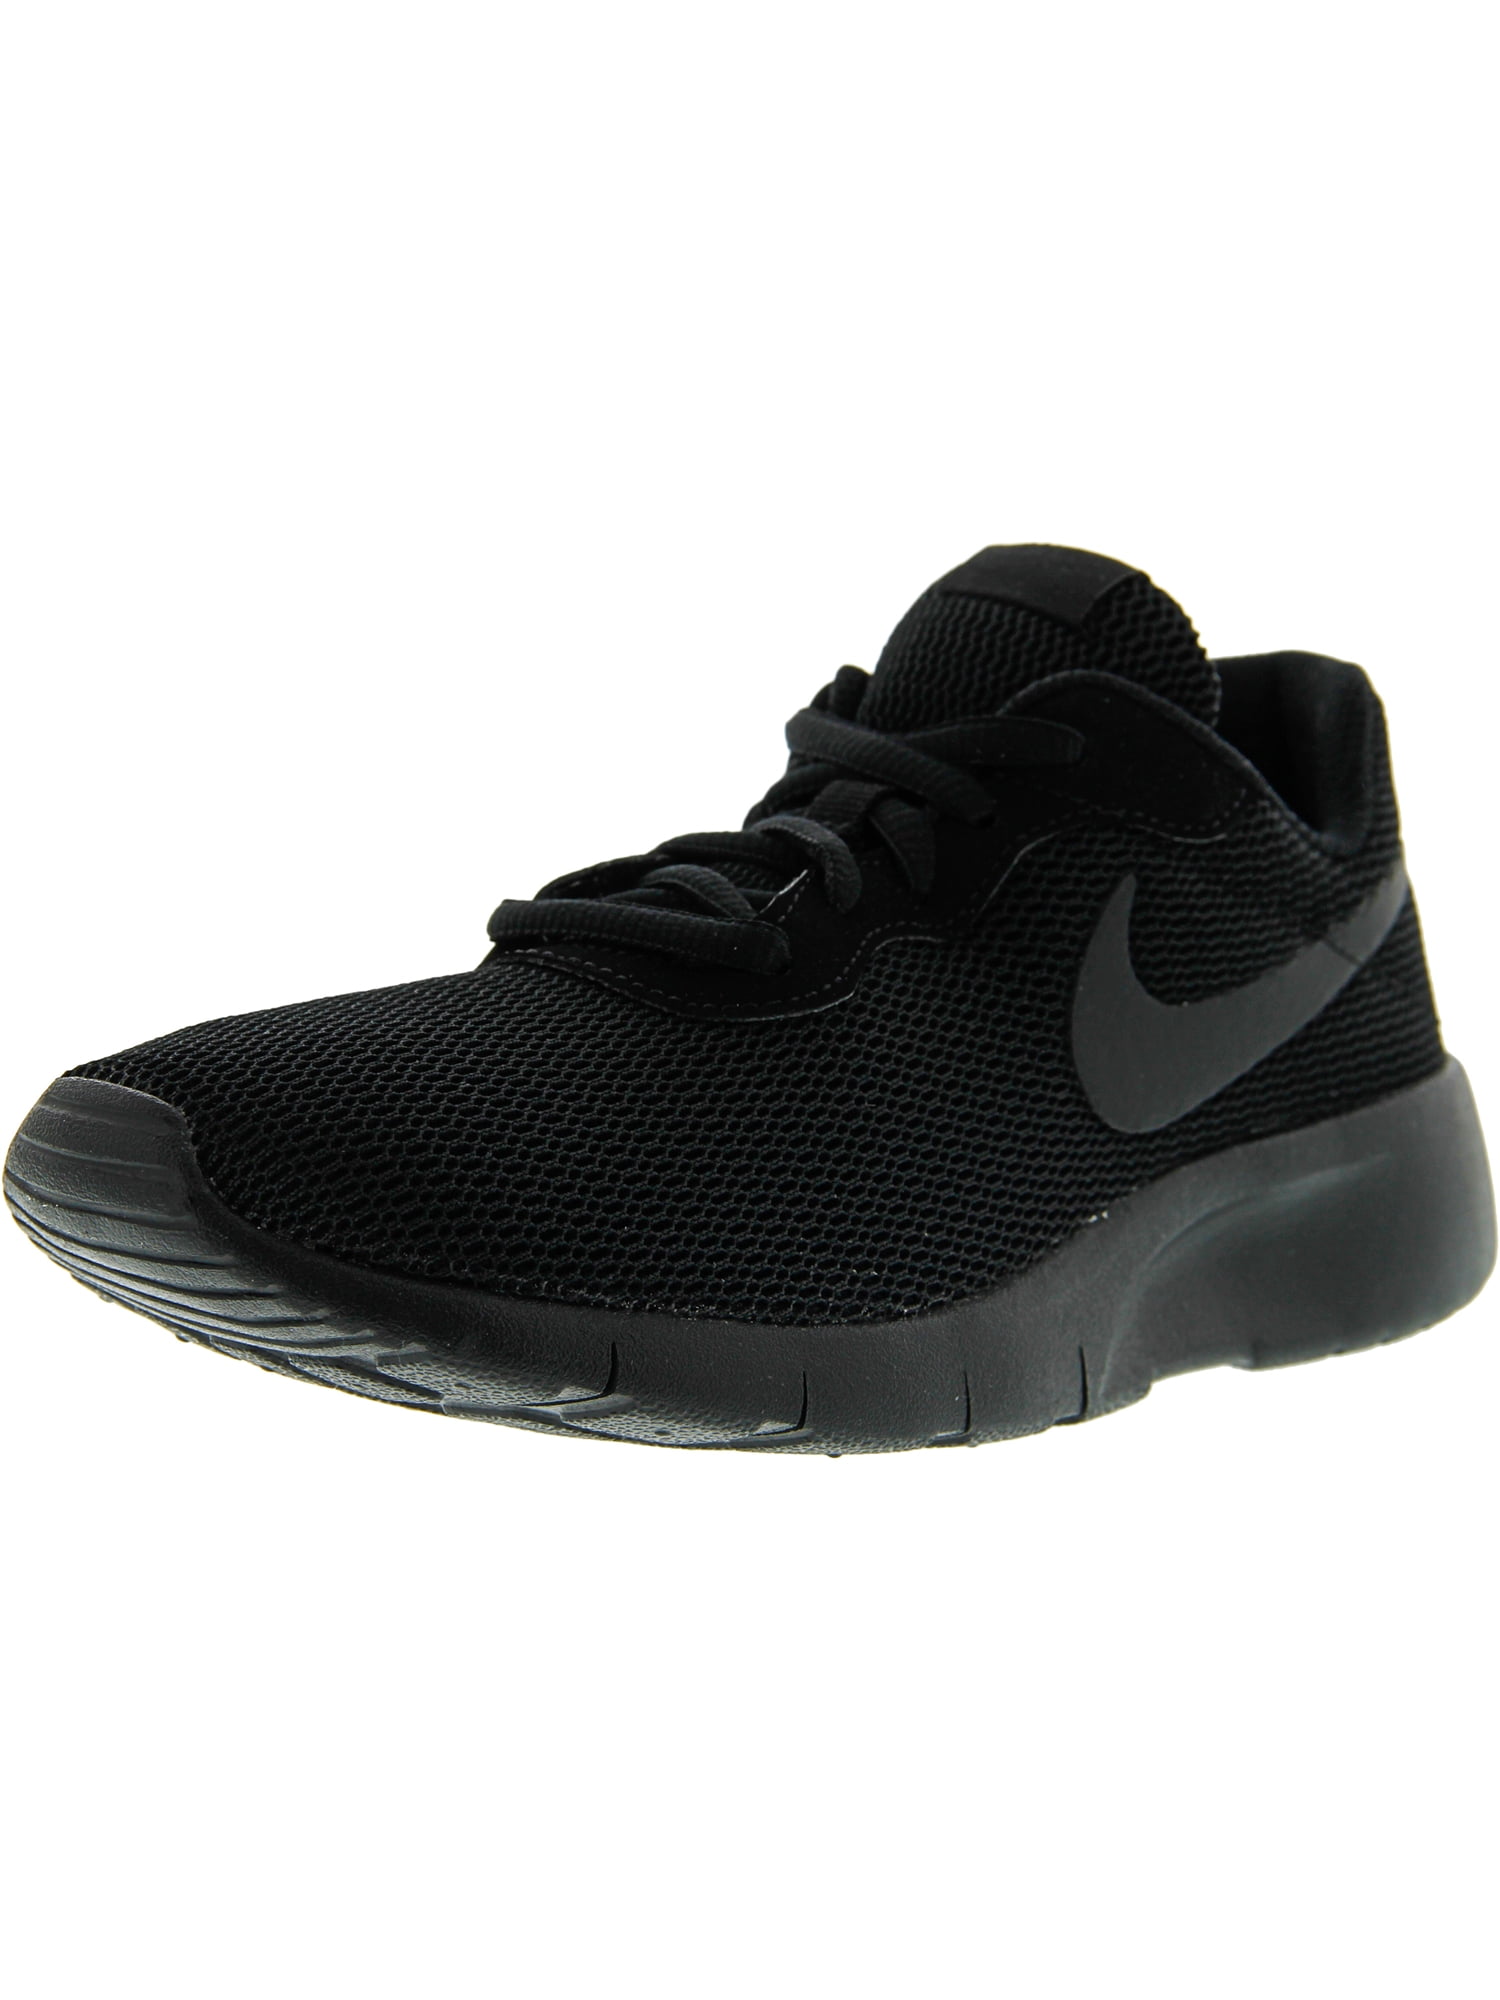 / Black Ankle-High 7M Running Nike Mesh Shoe Tanjun -